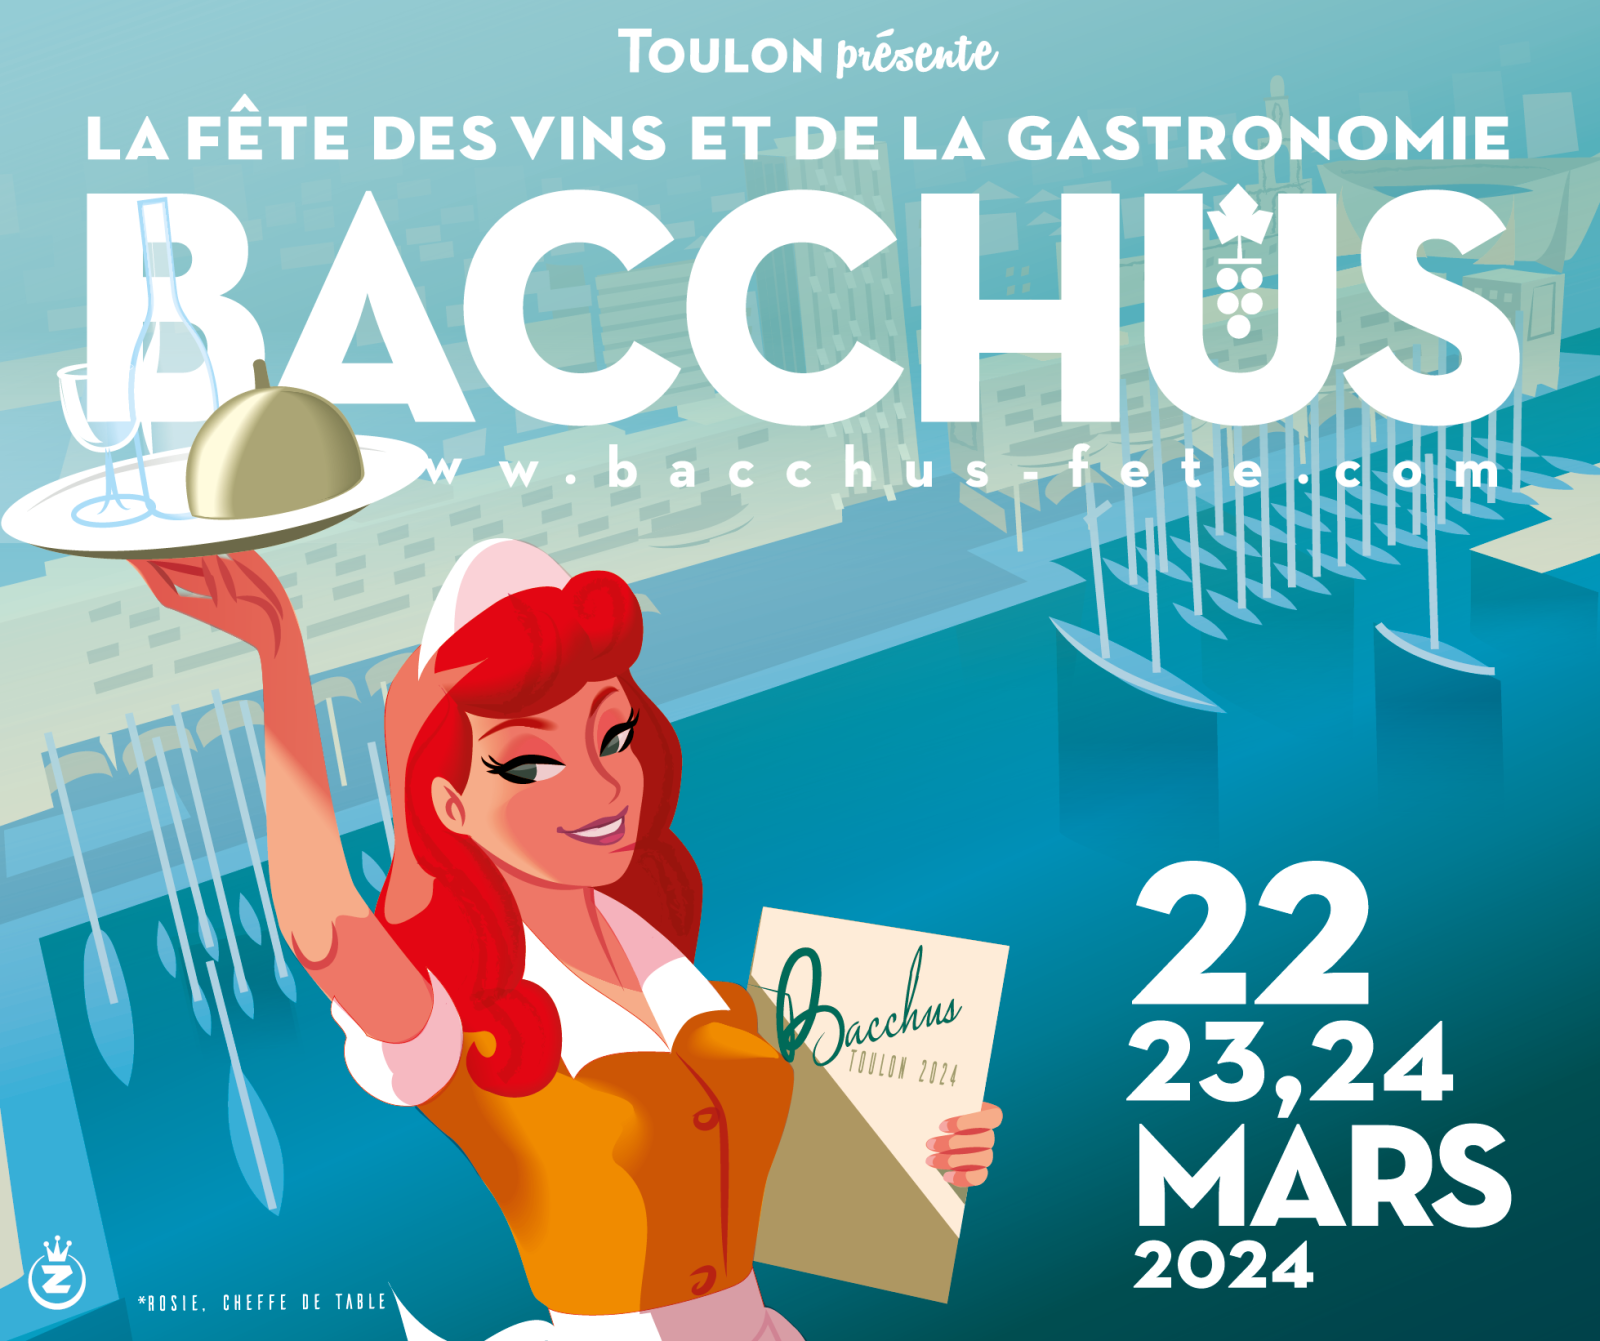 30e Bacchus, Fête des vins et de la gastronomie à Toulon - 0